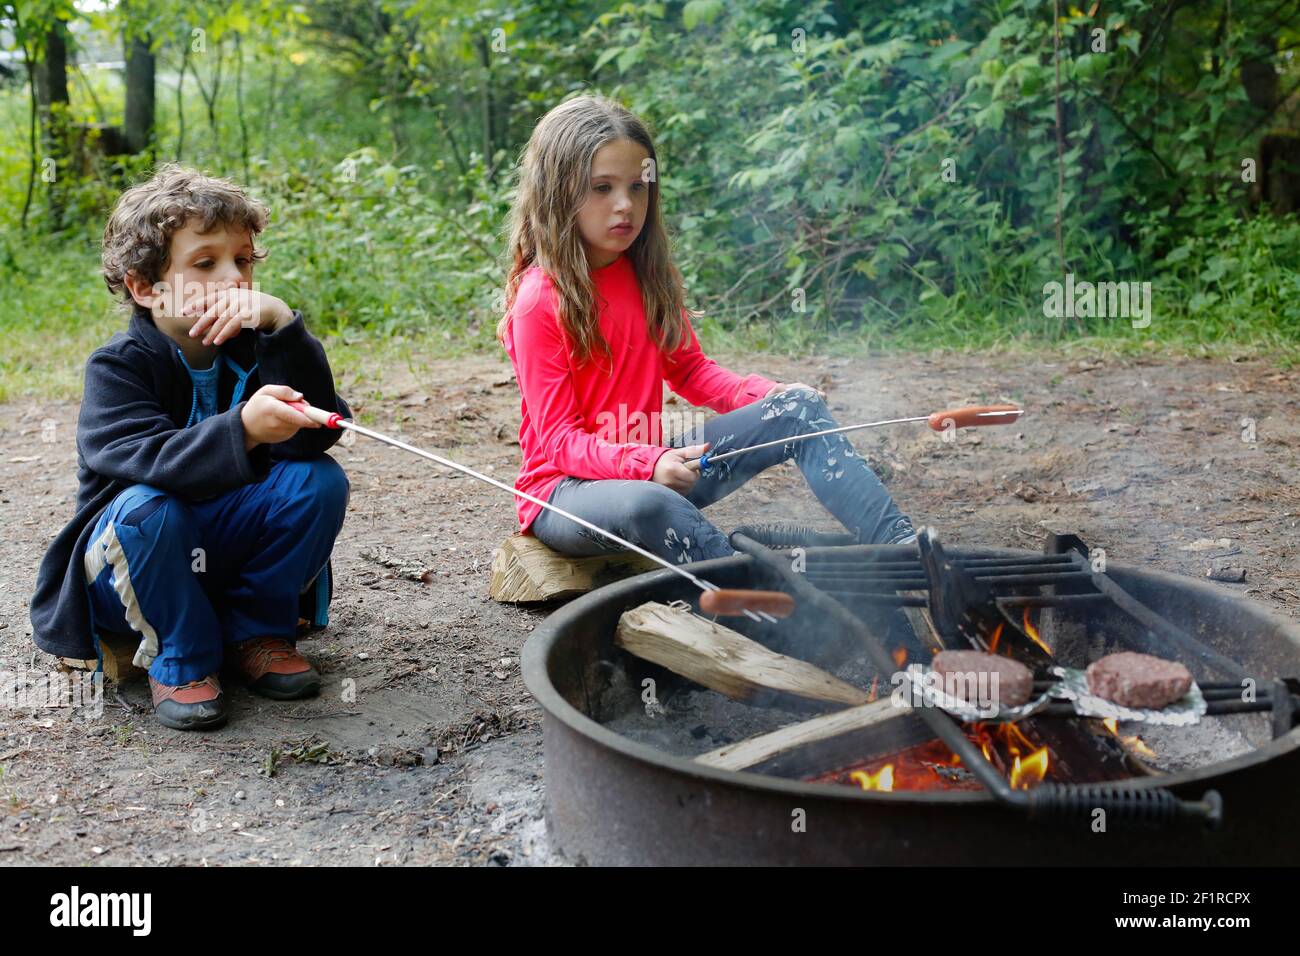 Zwei Kinder, die während des Campens Hot Dogs rösten Stockfoto